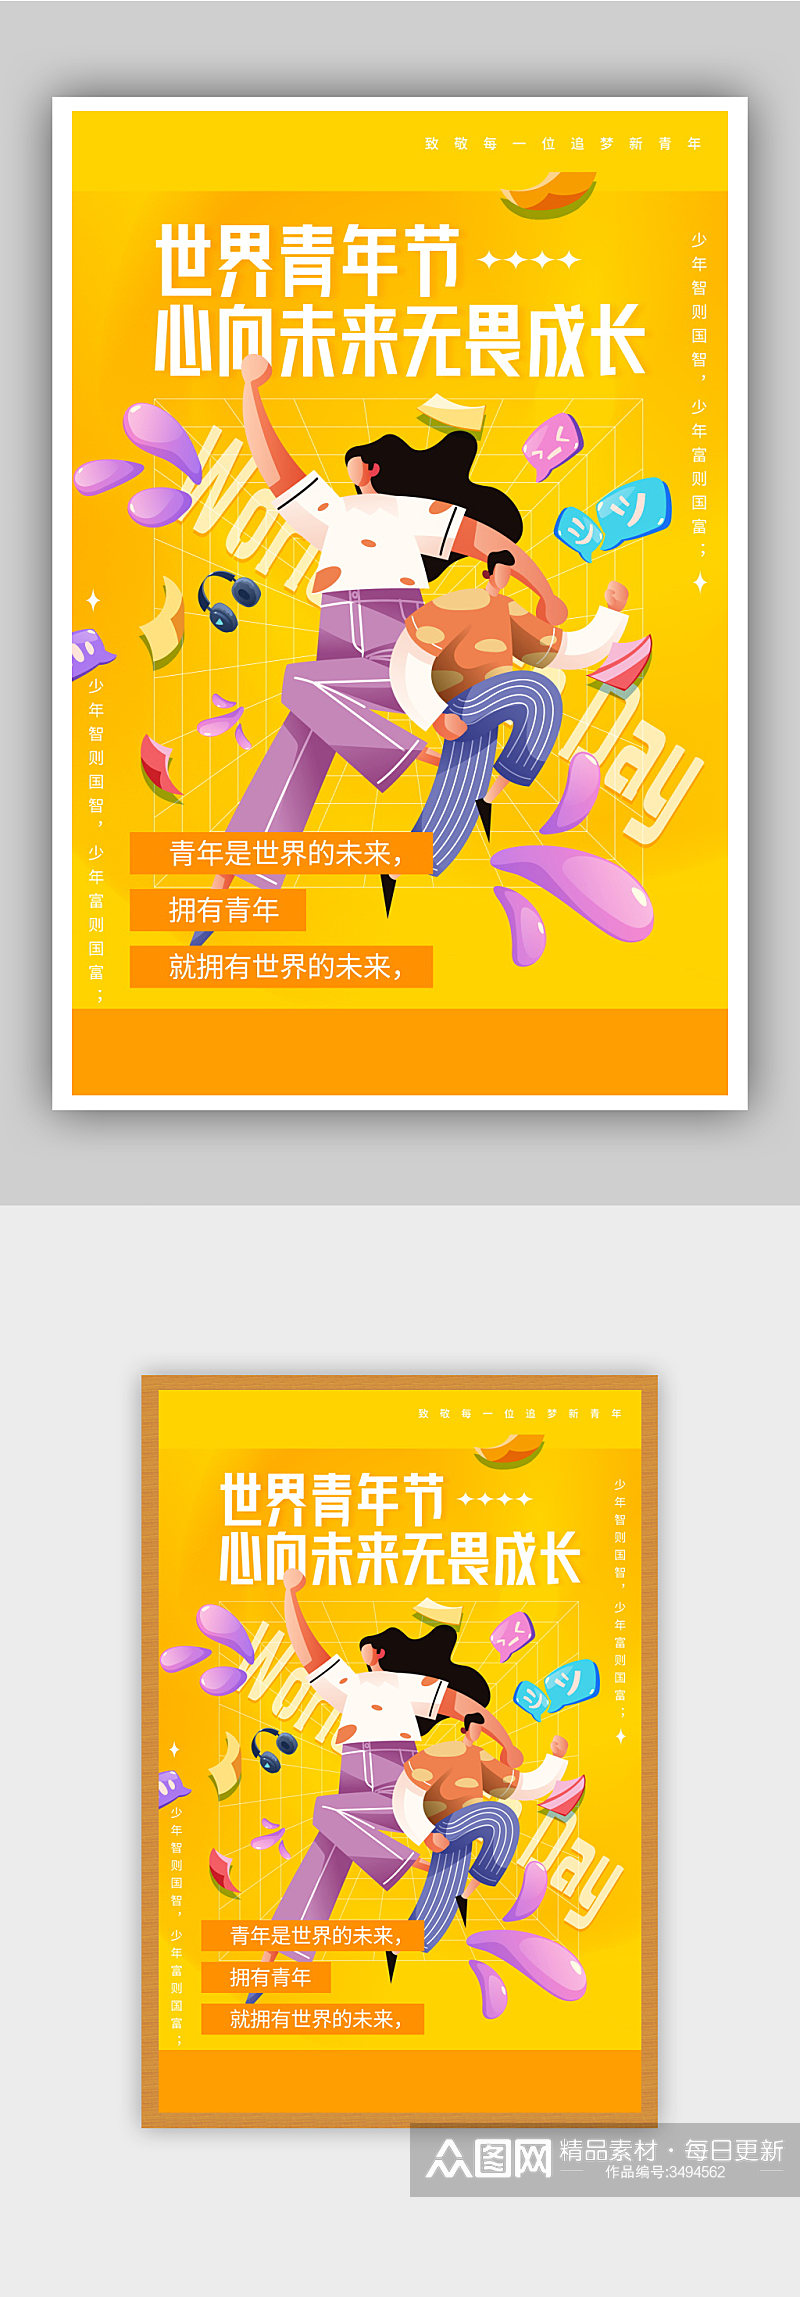 扁平风青年节宣传海报素材